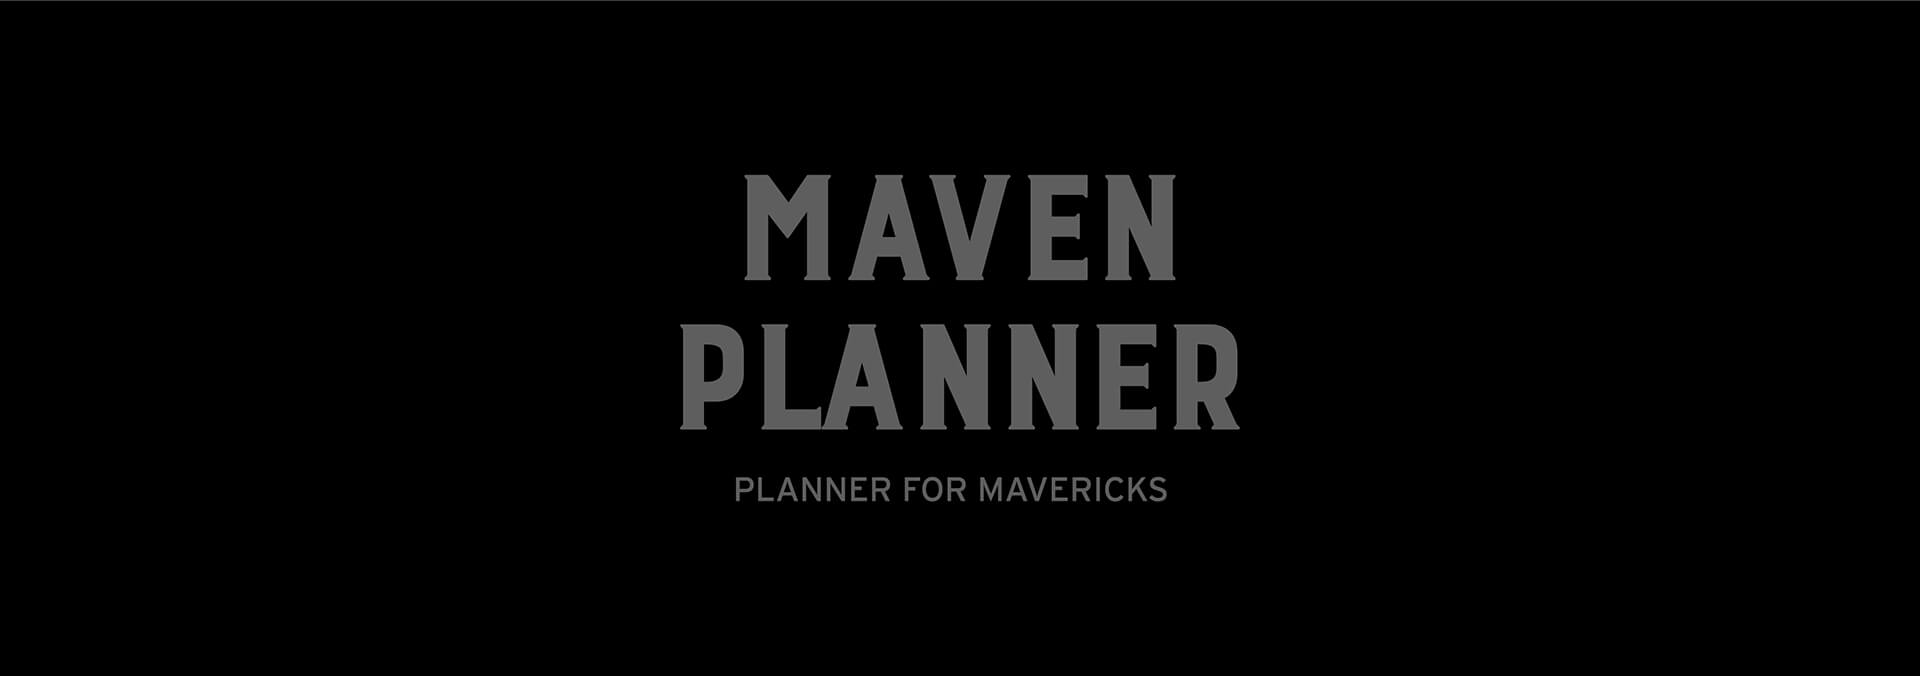 Maven Planner banner